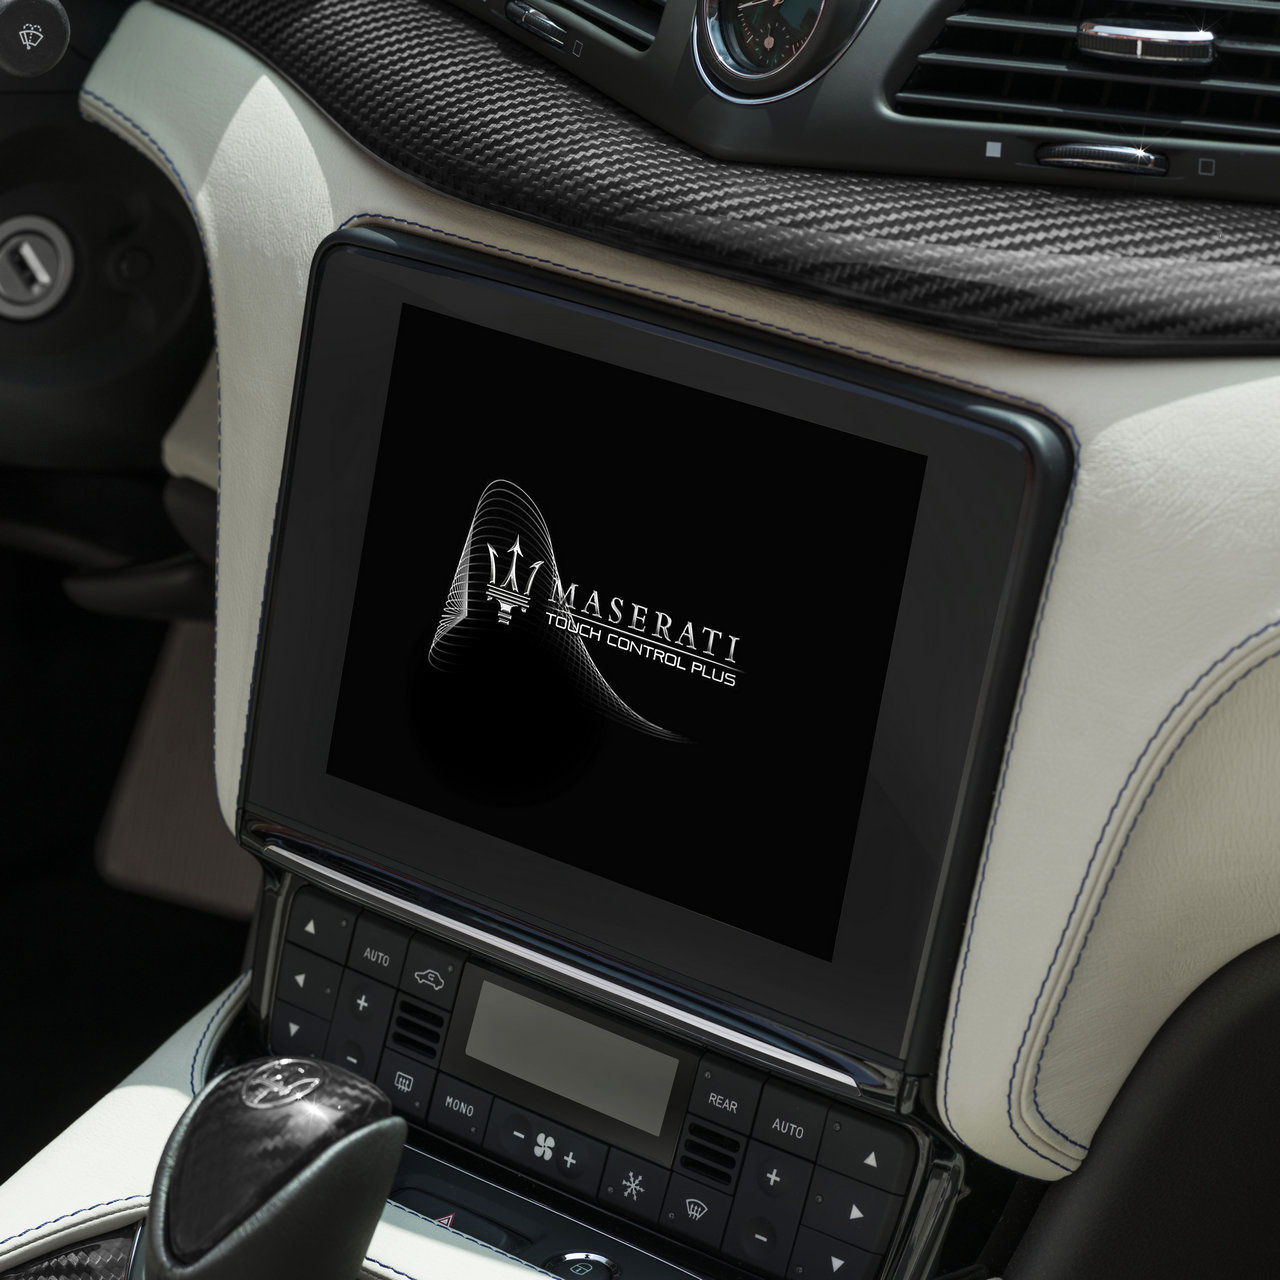 Maserati GranCabrio - dettagli degli interni e display touchscreen